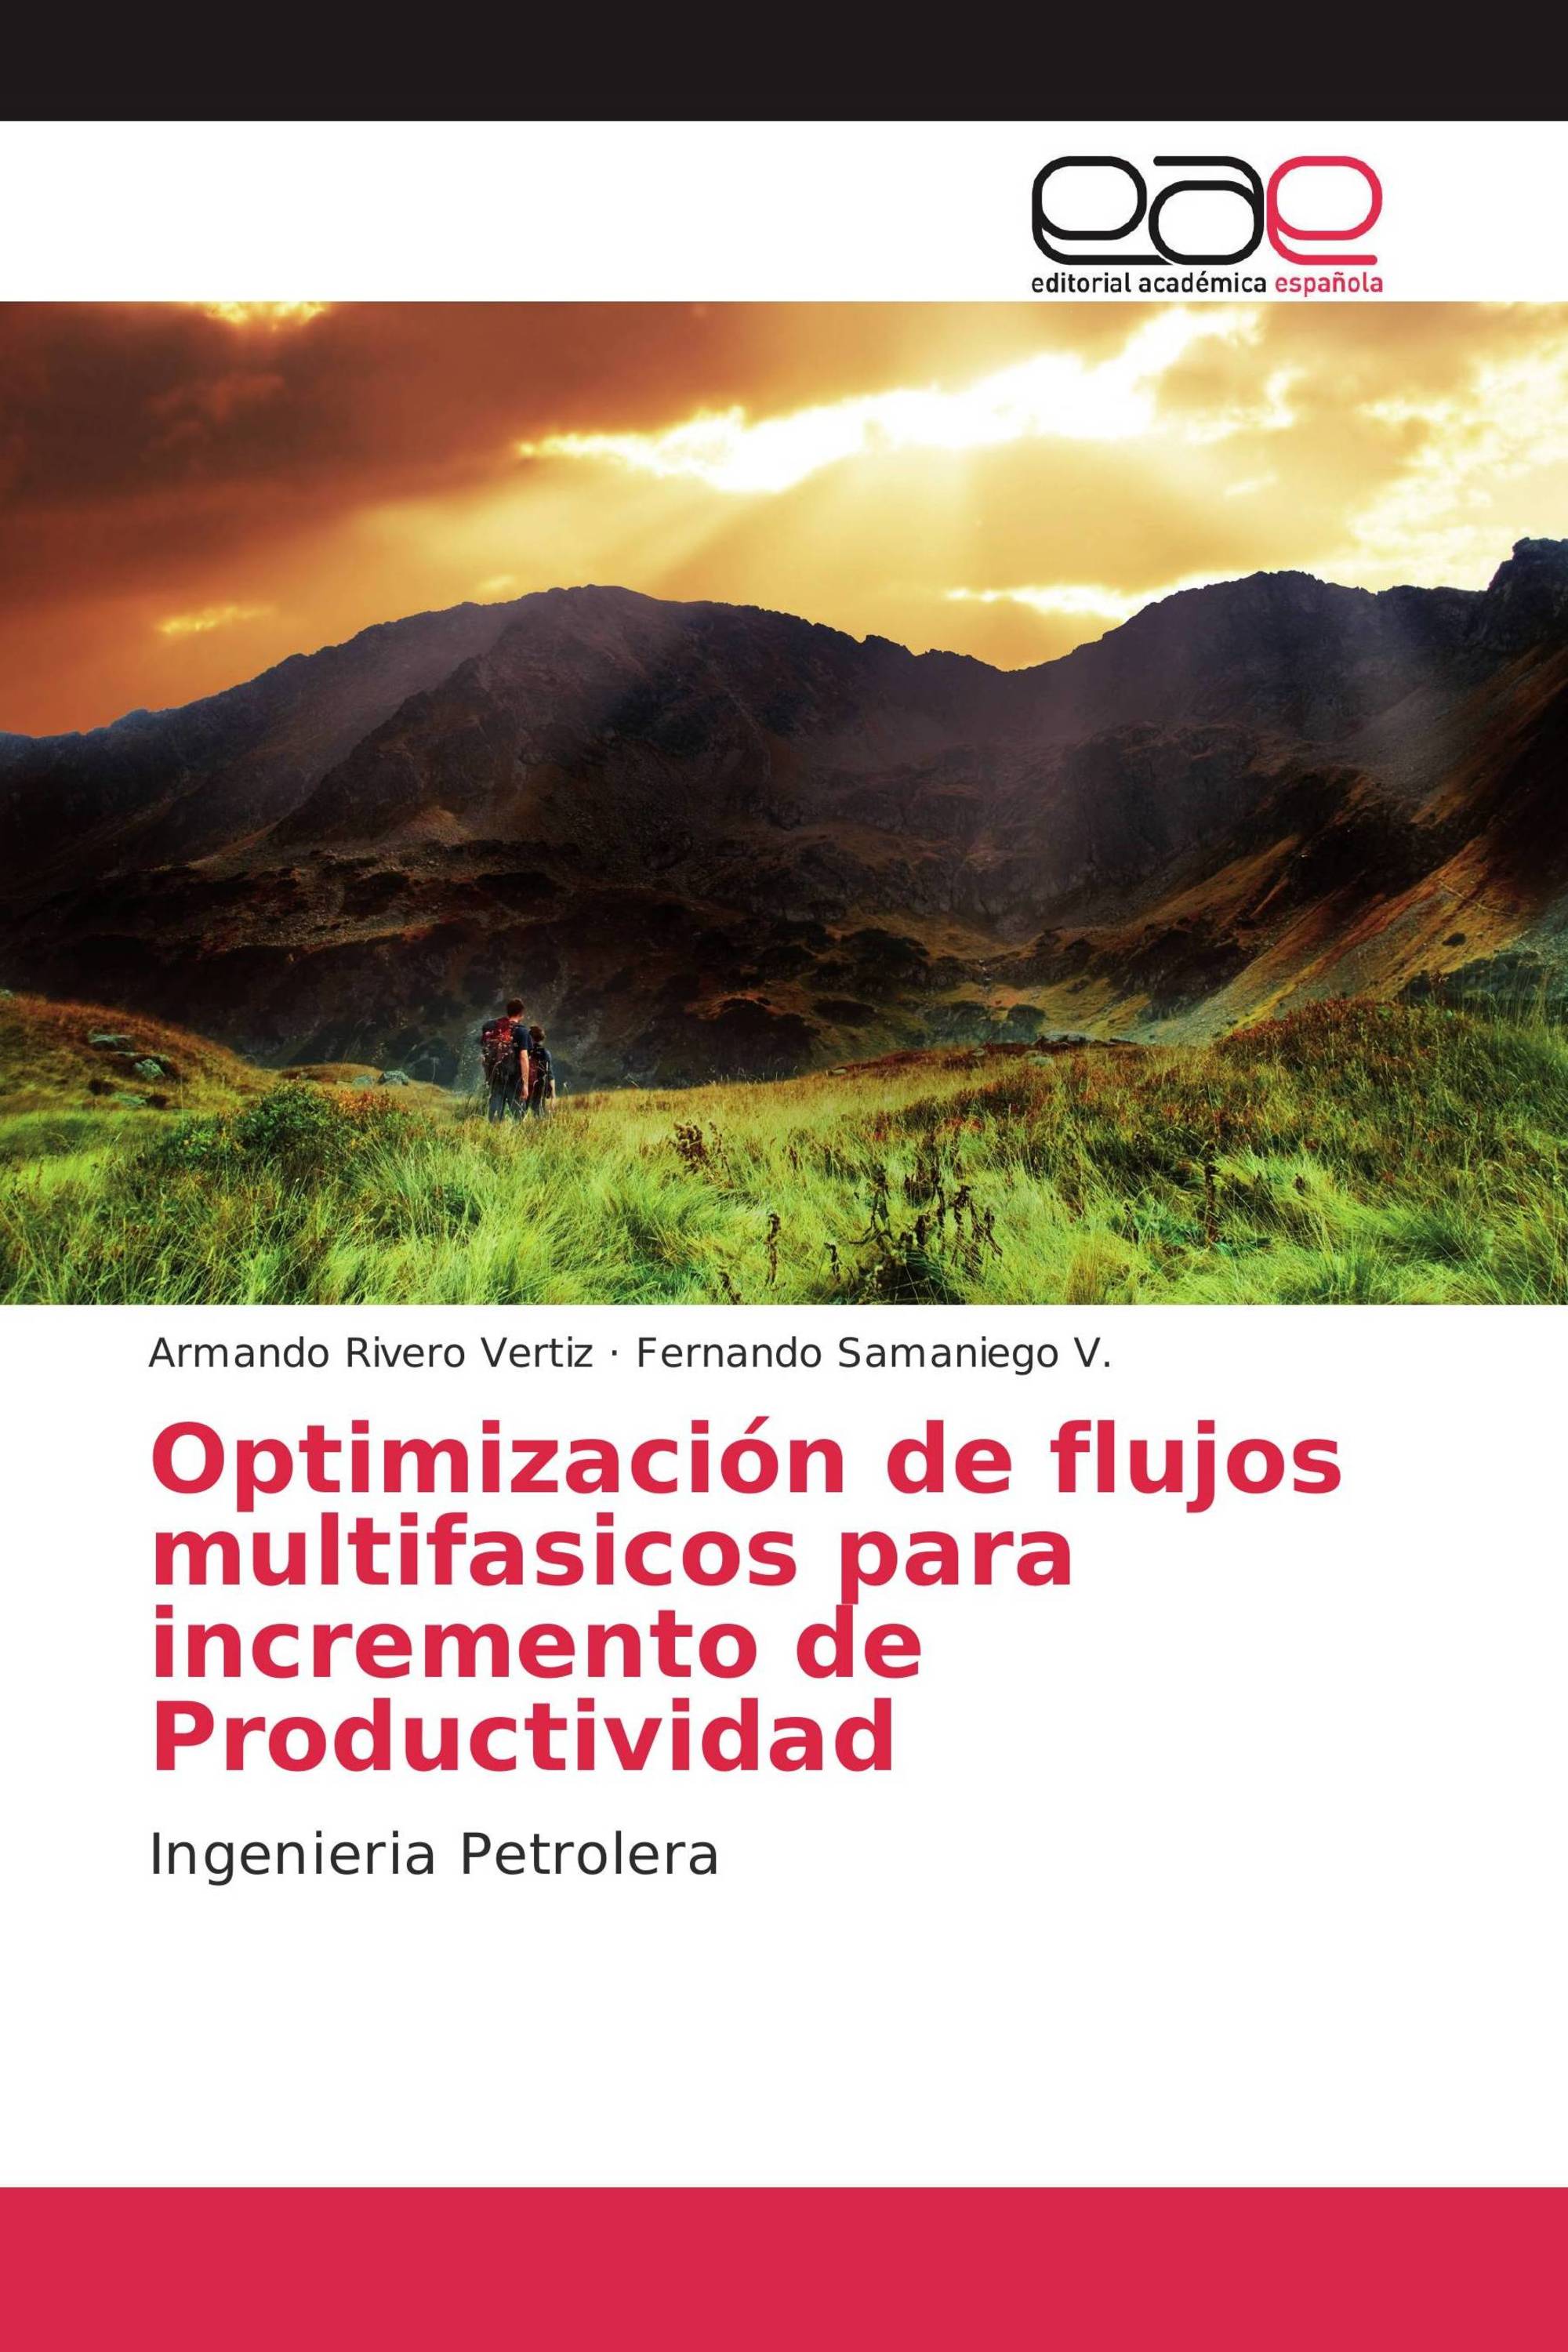 Optimización de flujos multifasicos para incremento de Productividad